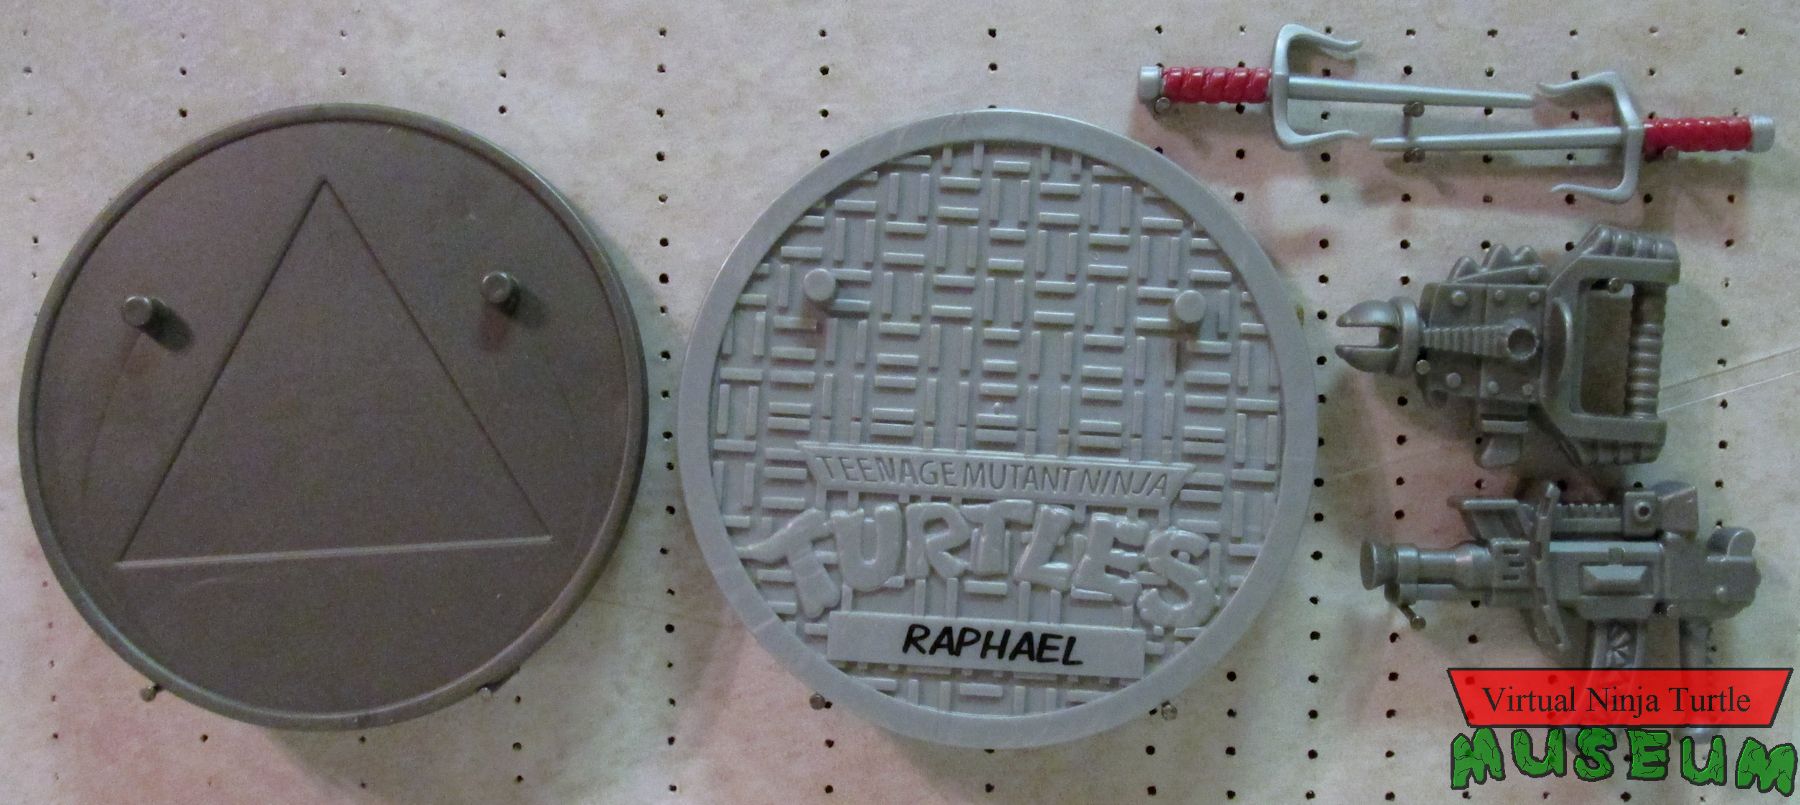 Raphael vs. Triceraton accessories